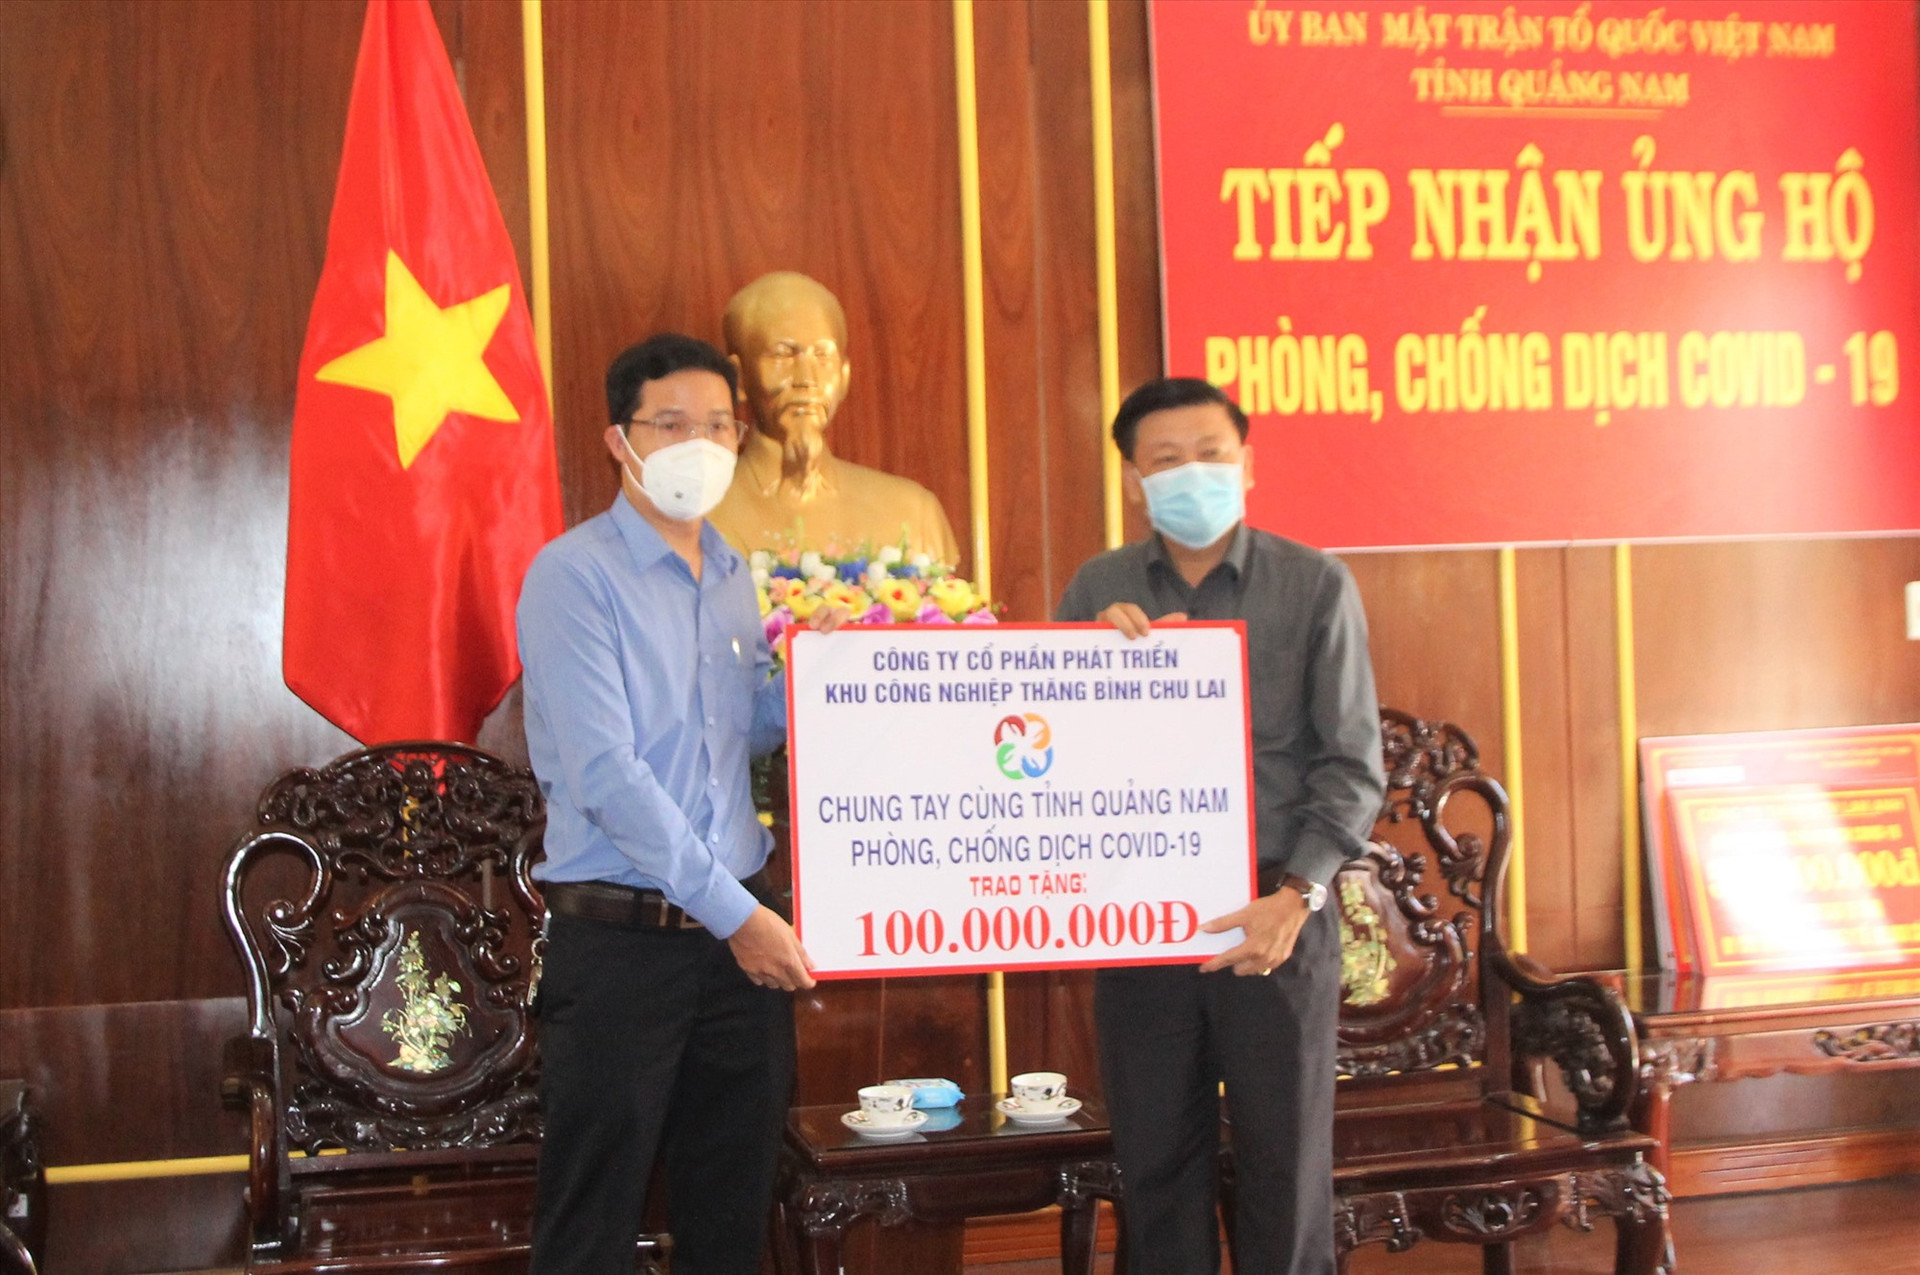 Công ty CP Phát triển KCN Thăng Bình Chu Lai ủng hộ 100 triệu đồng chống dịch Covid-19. Ảnh: V.A